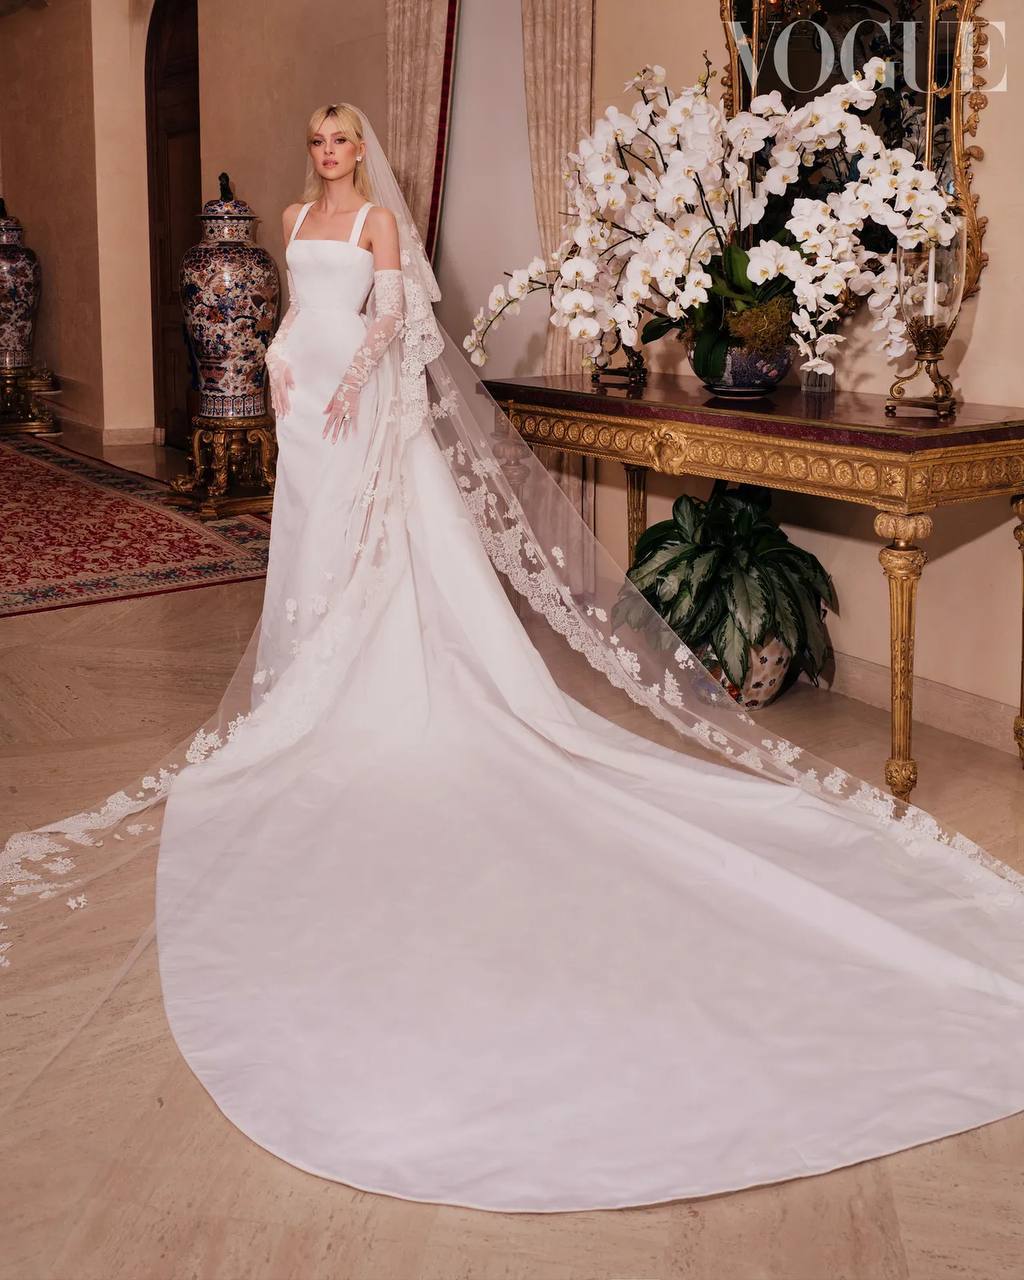 Пьерпаоло Пиччоли создал платье для свадьбы Николы Пельтц и Бруклина Бекхэма (фото 1)